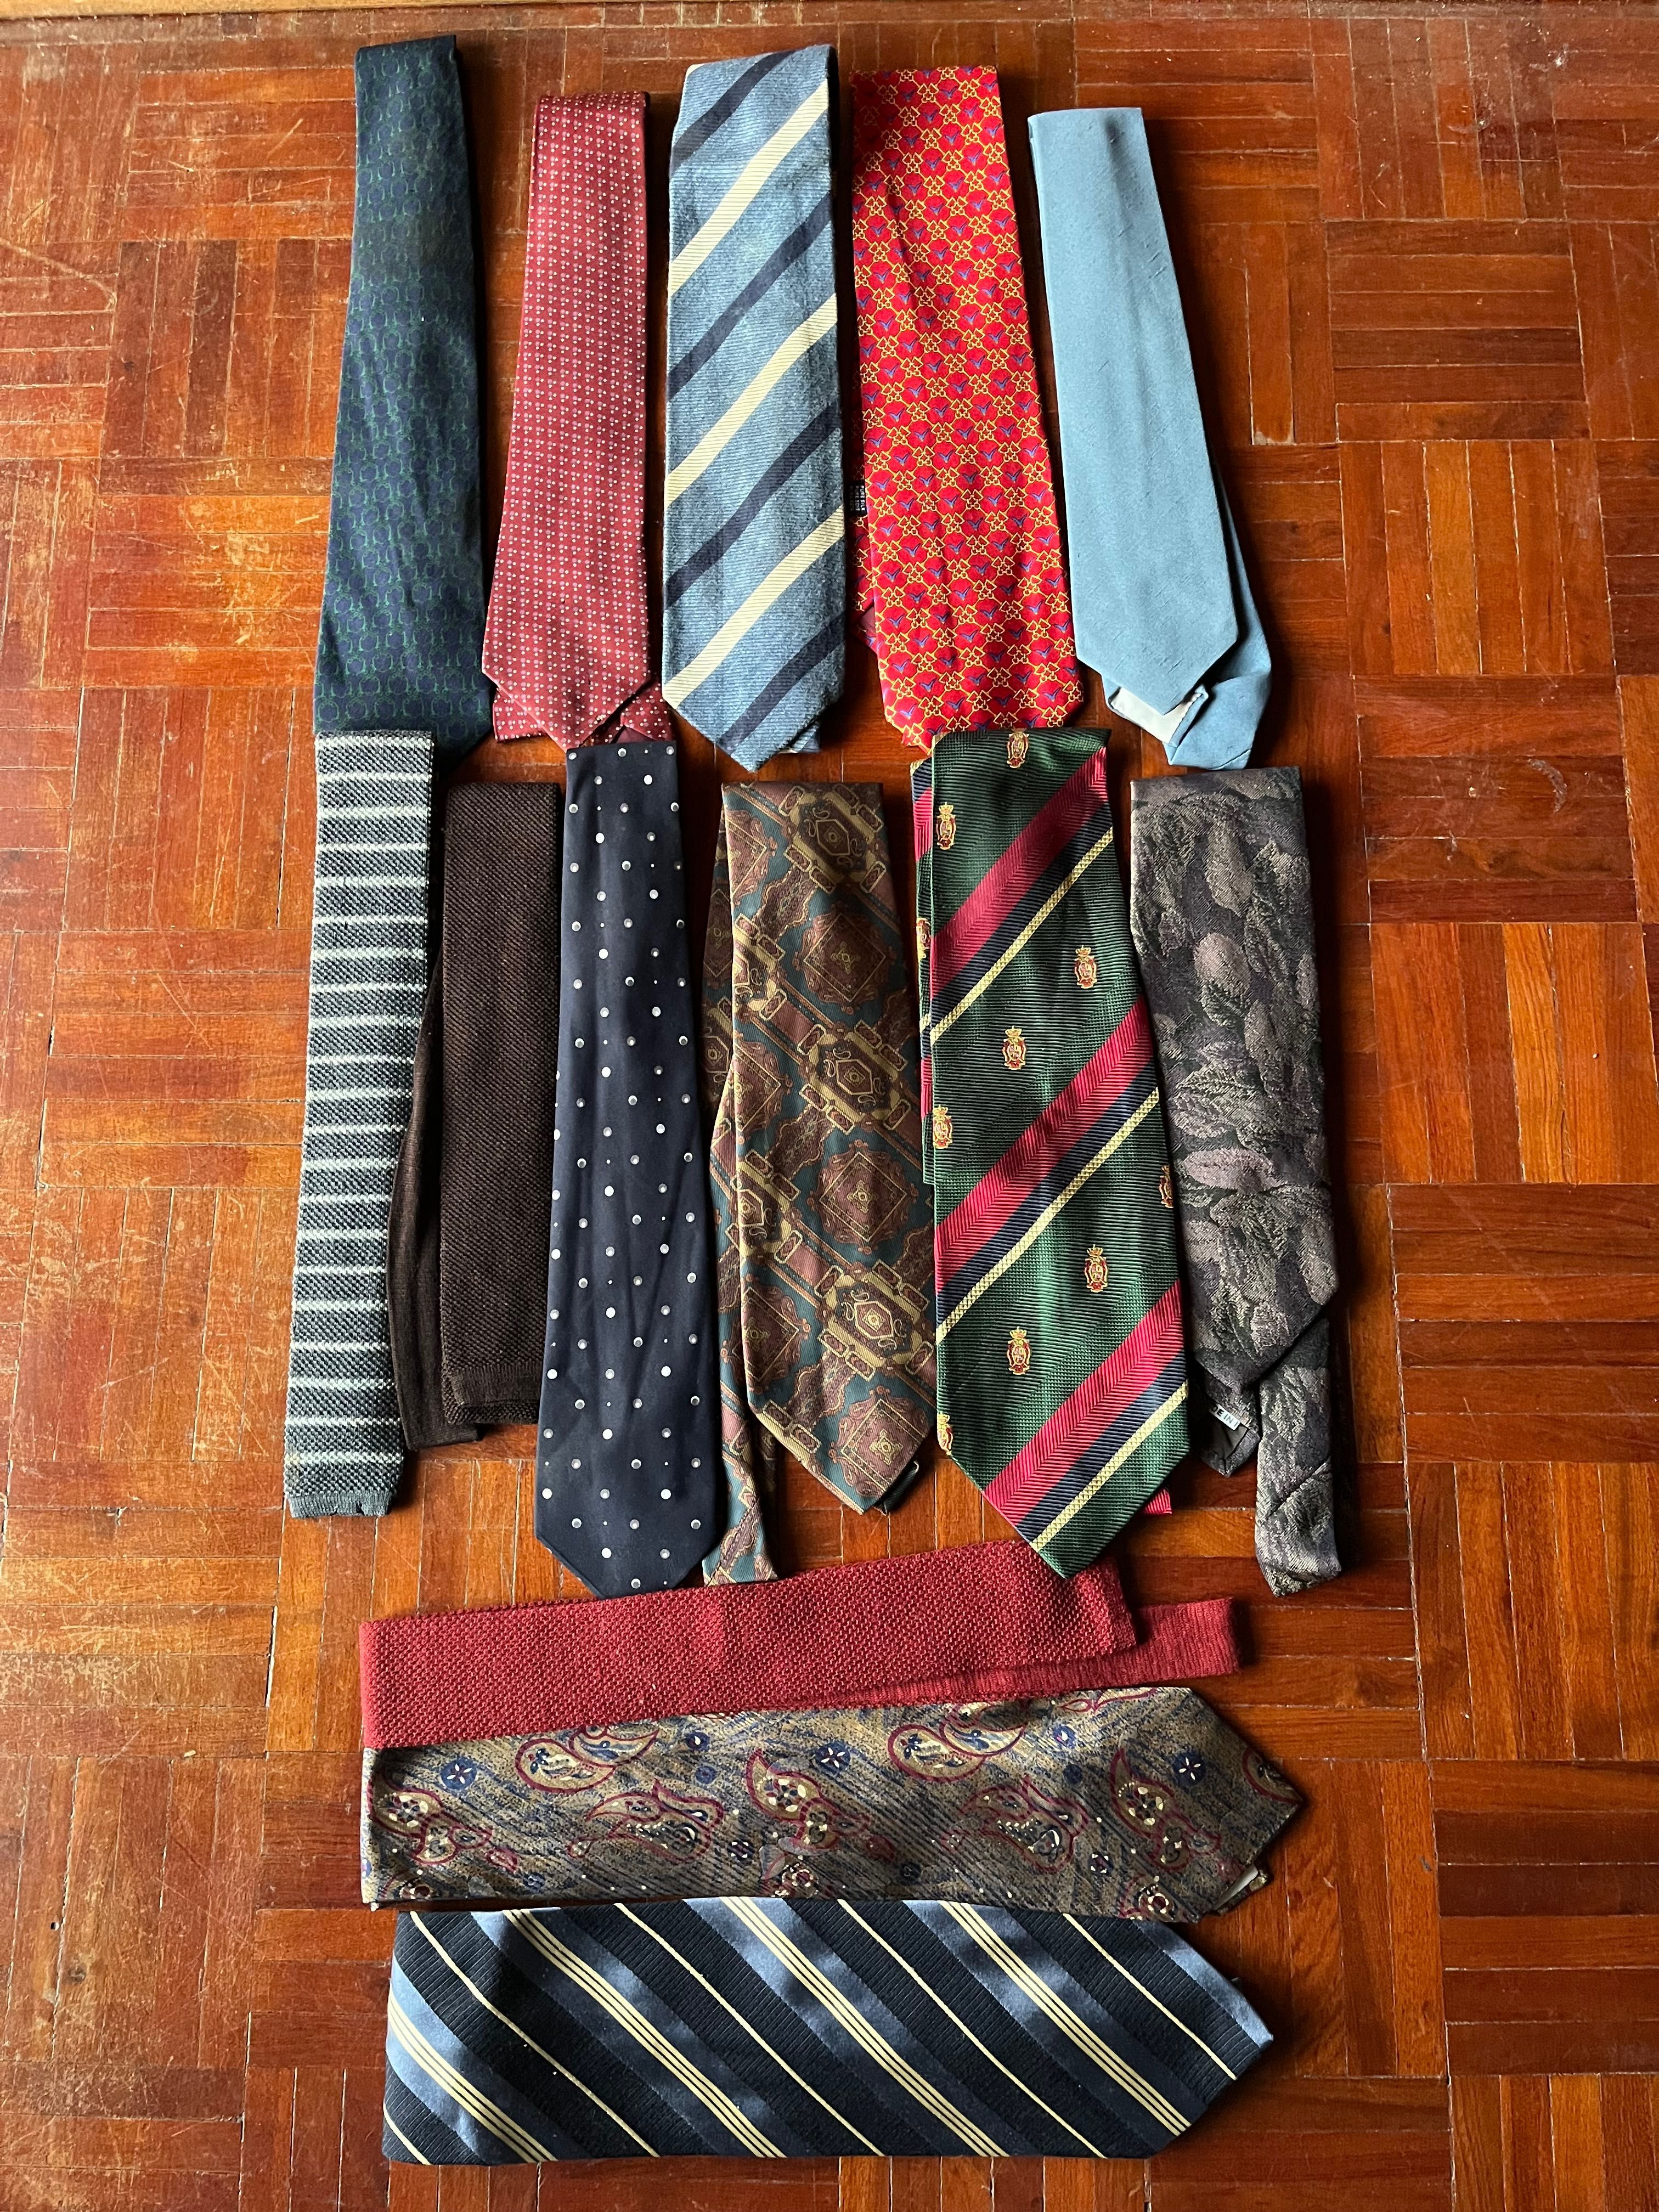 Vendo gravatas de seda / silk ties